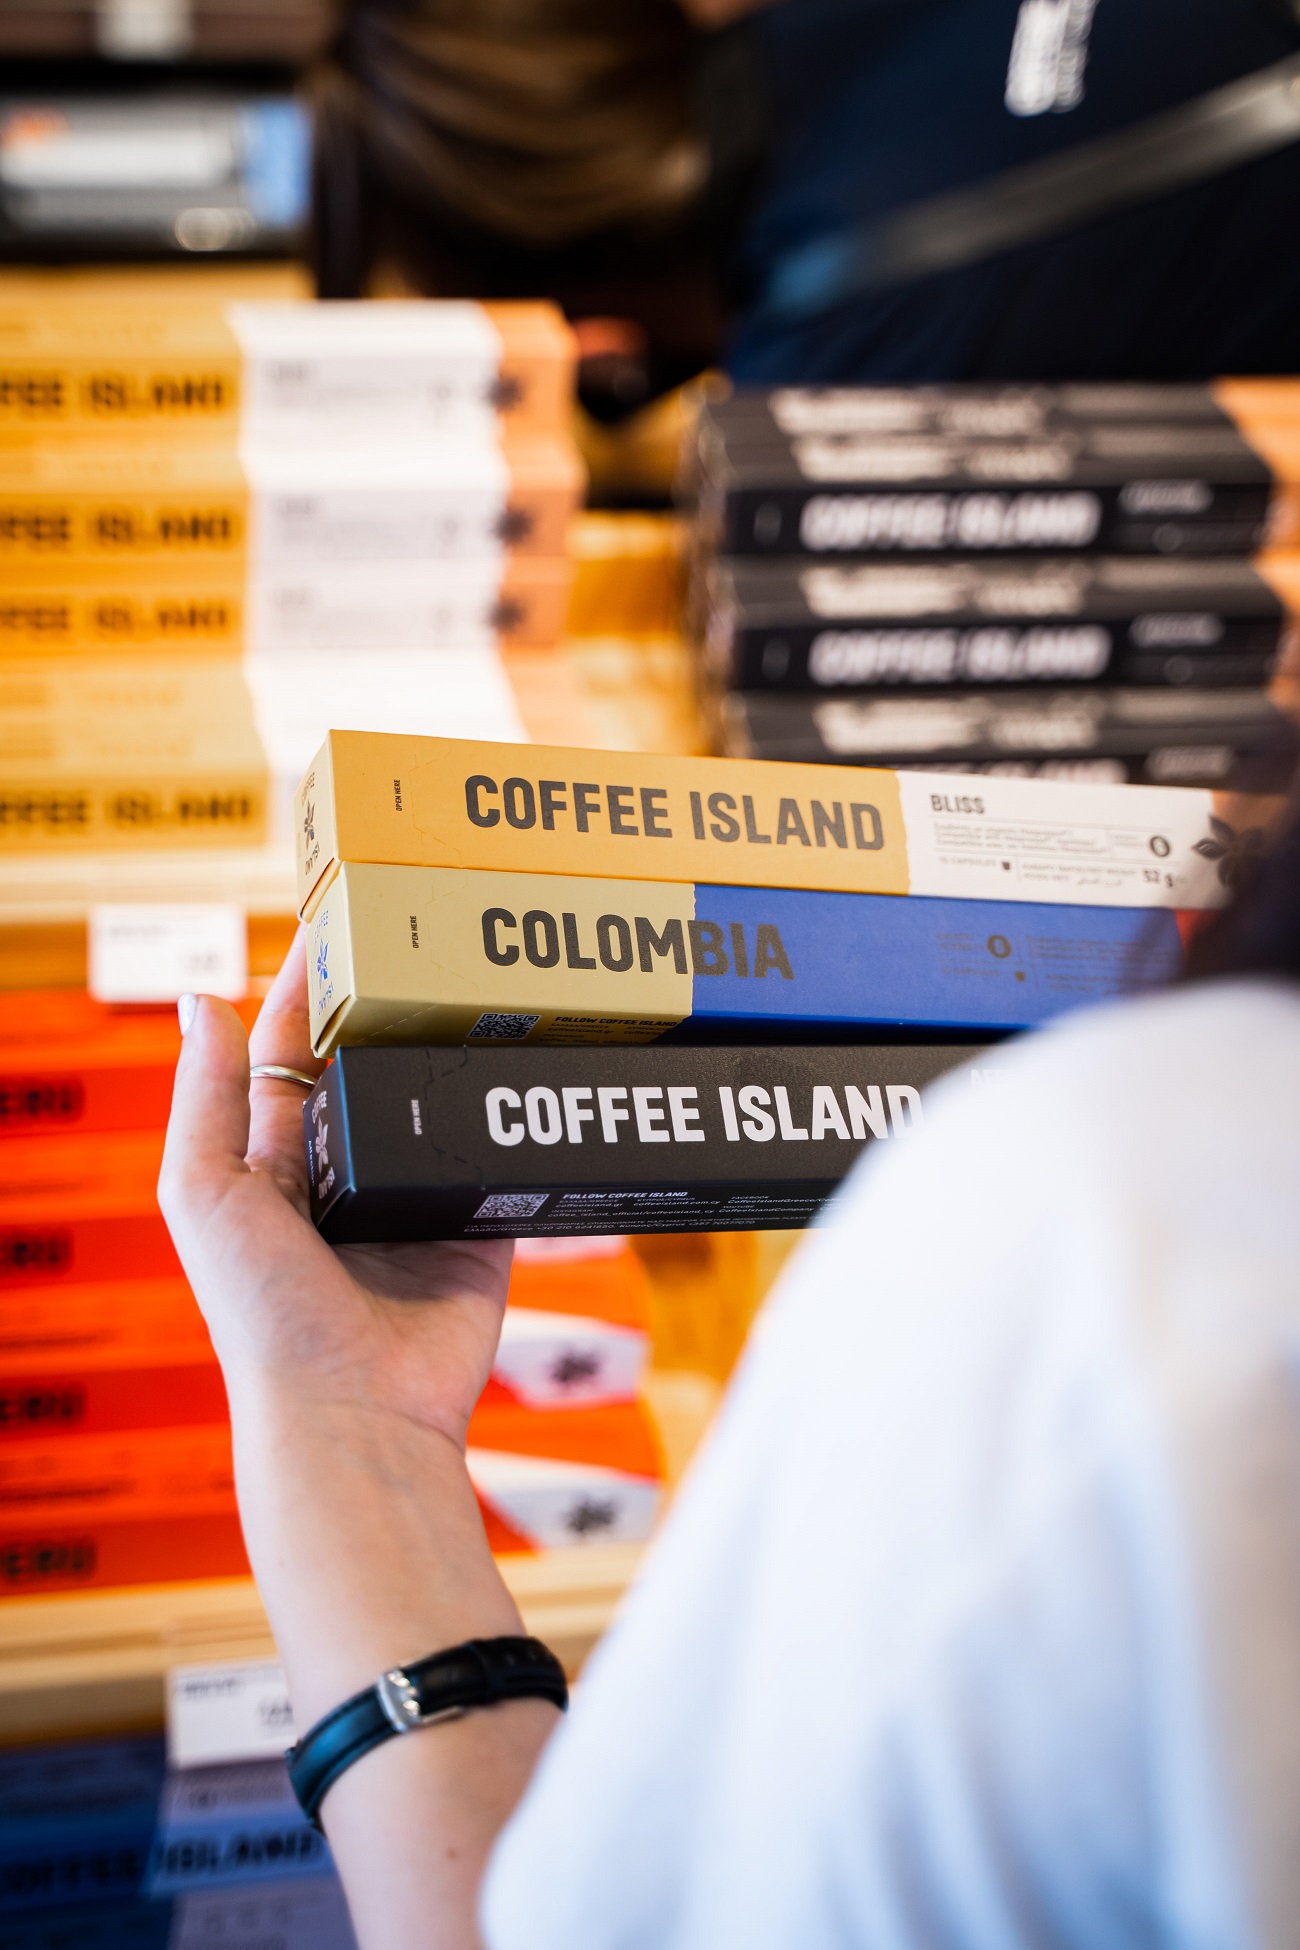 Coffee Island – Και δεύτερη συμφωνία με σούπερ μάρκετ – Τα σχέδια επέκτασης στην ελληνική αγορά